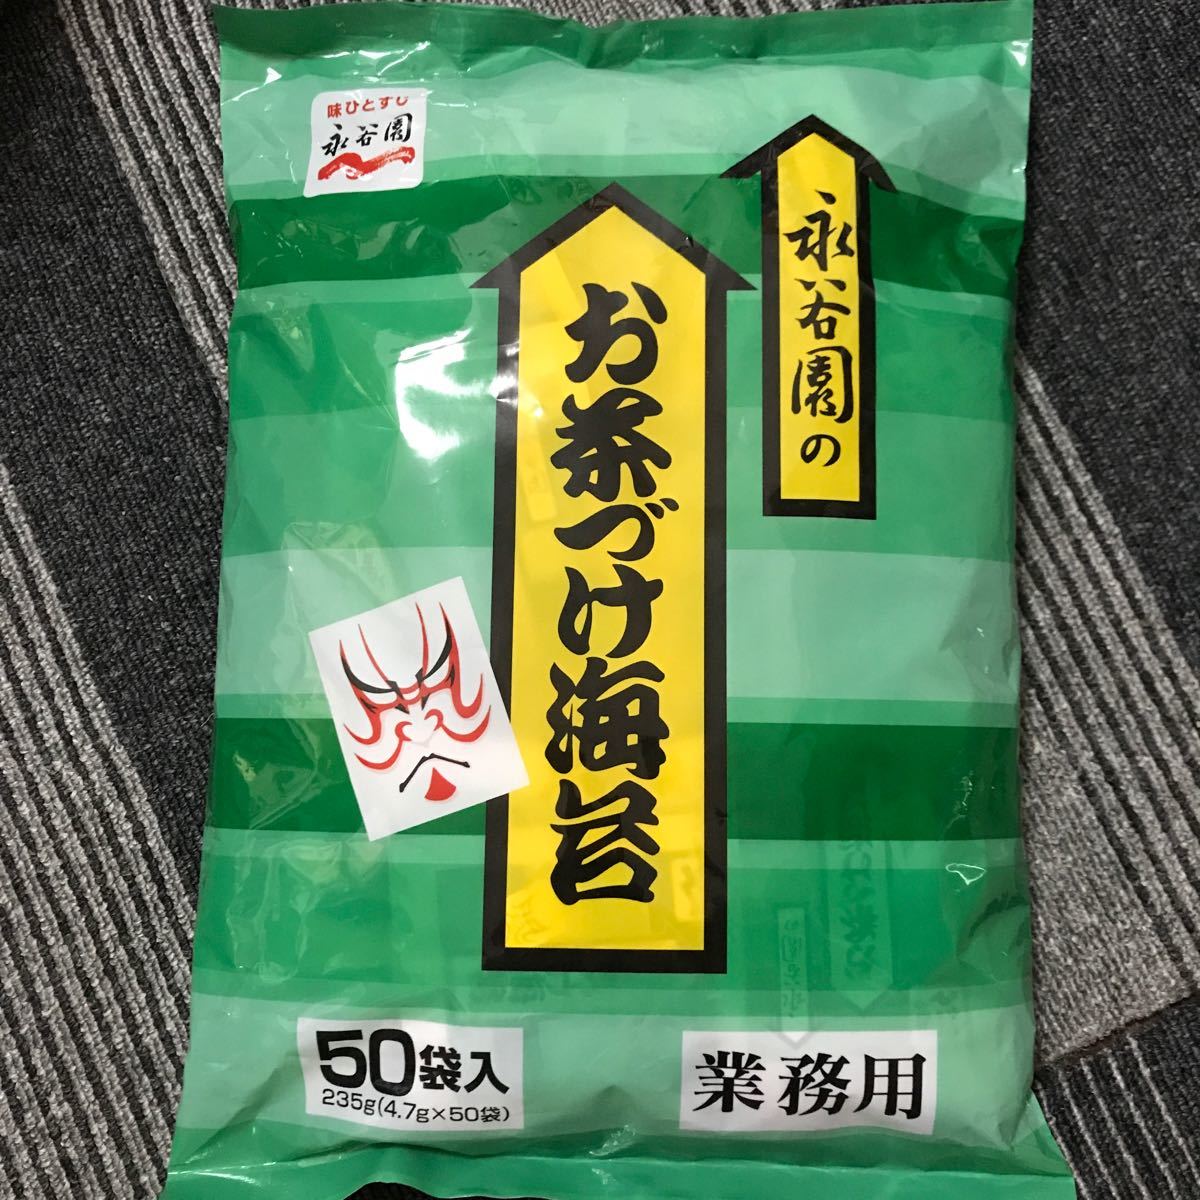 春夏新作モデル 永谷園 お茶漬け 海苔 業務用 50袋入 235g 4.7g×50袋